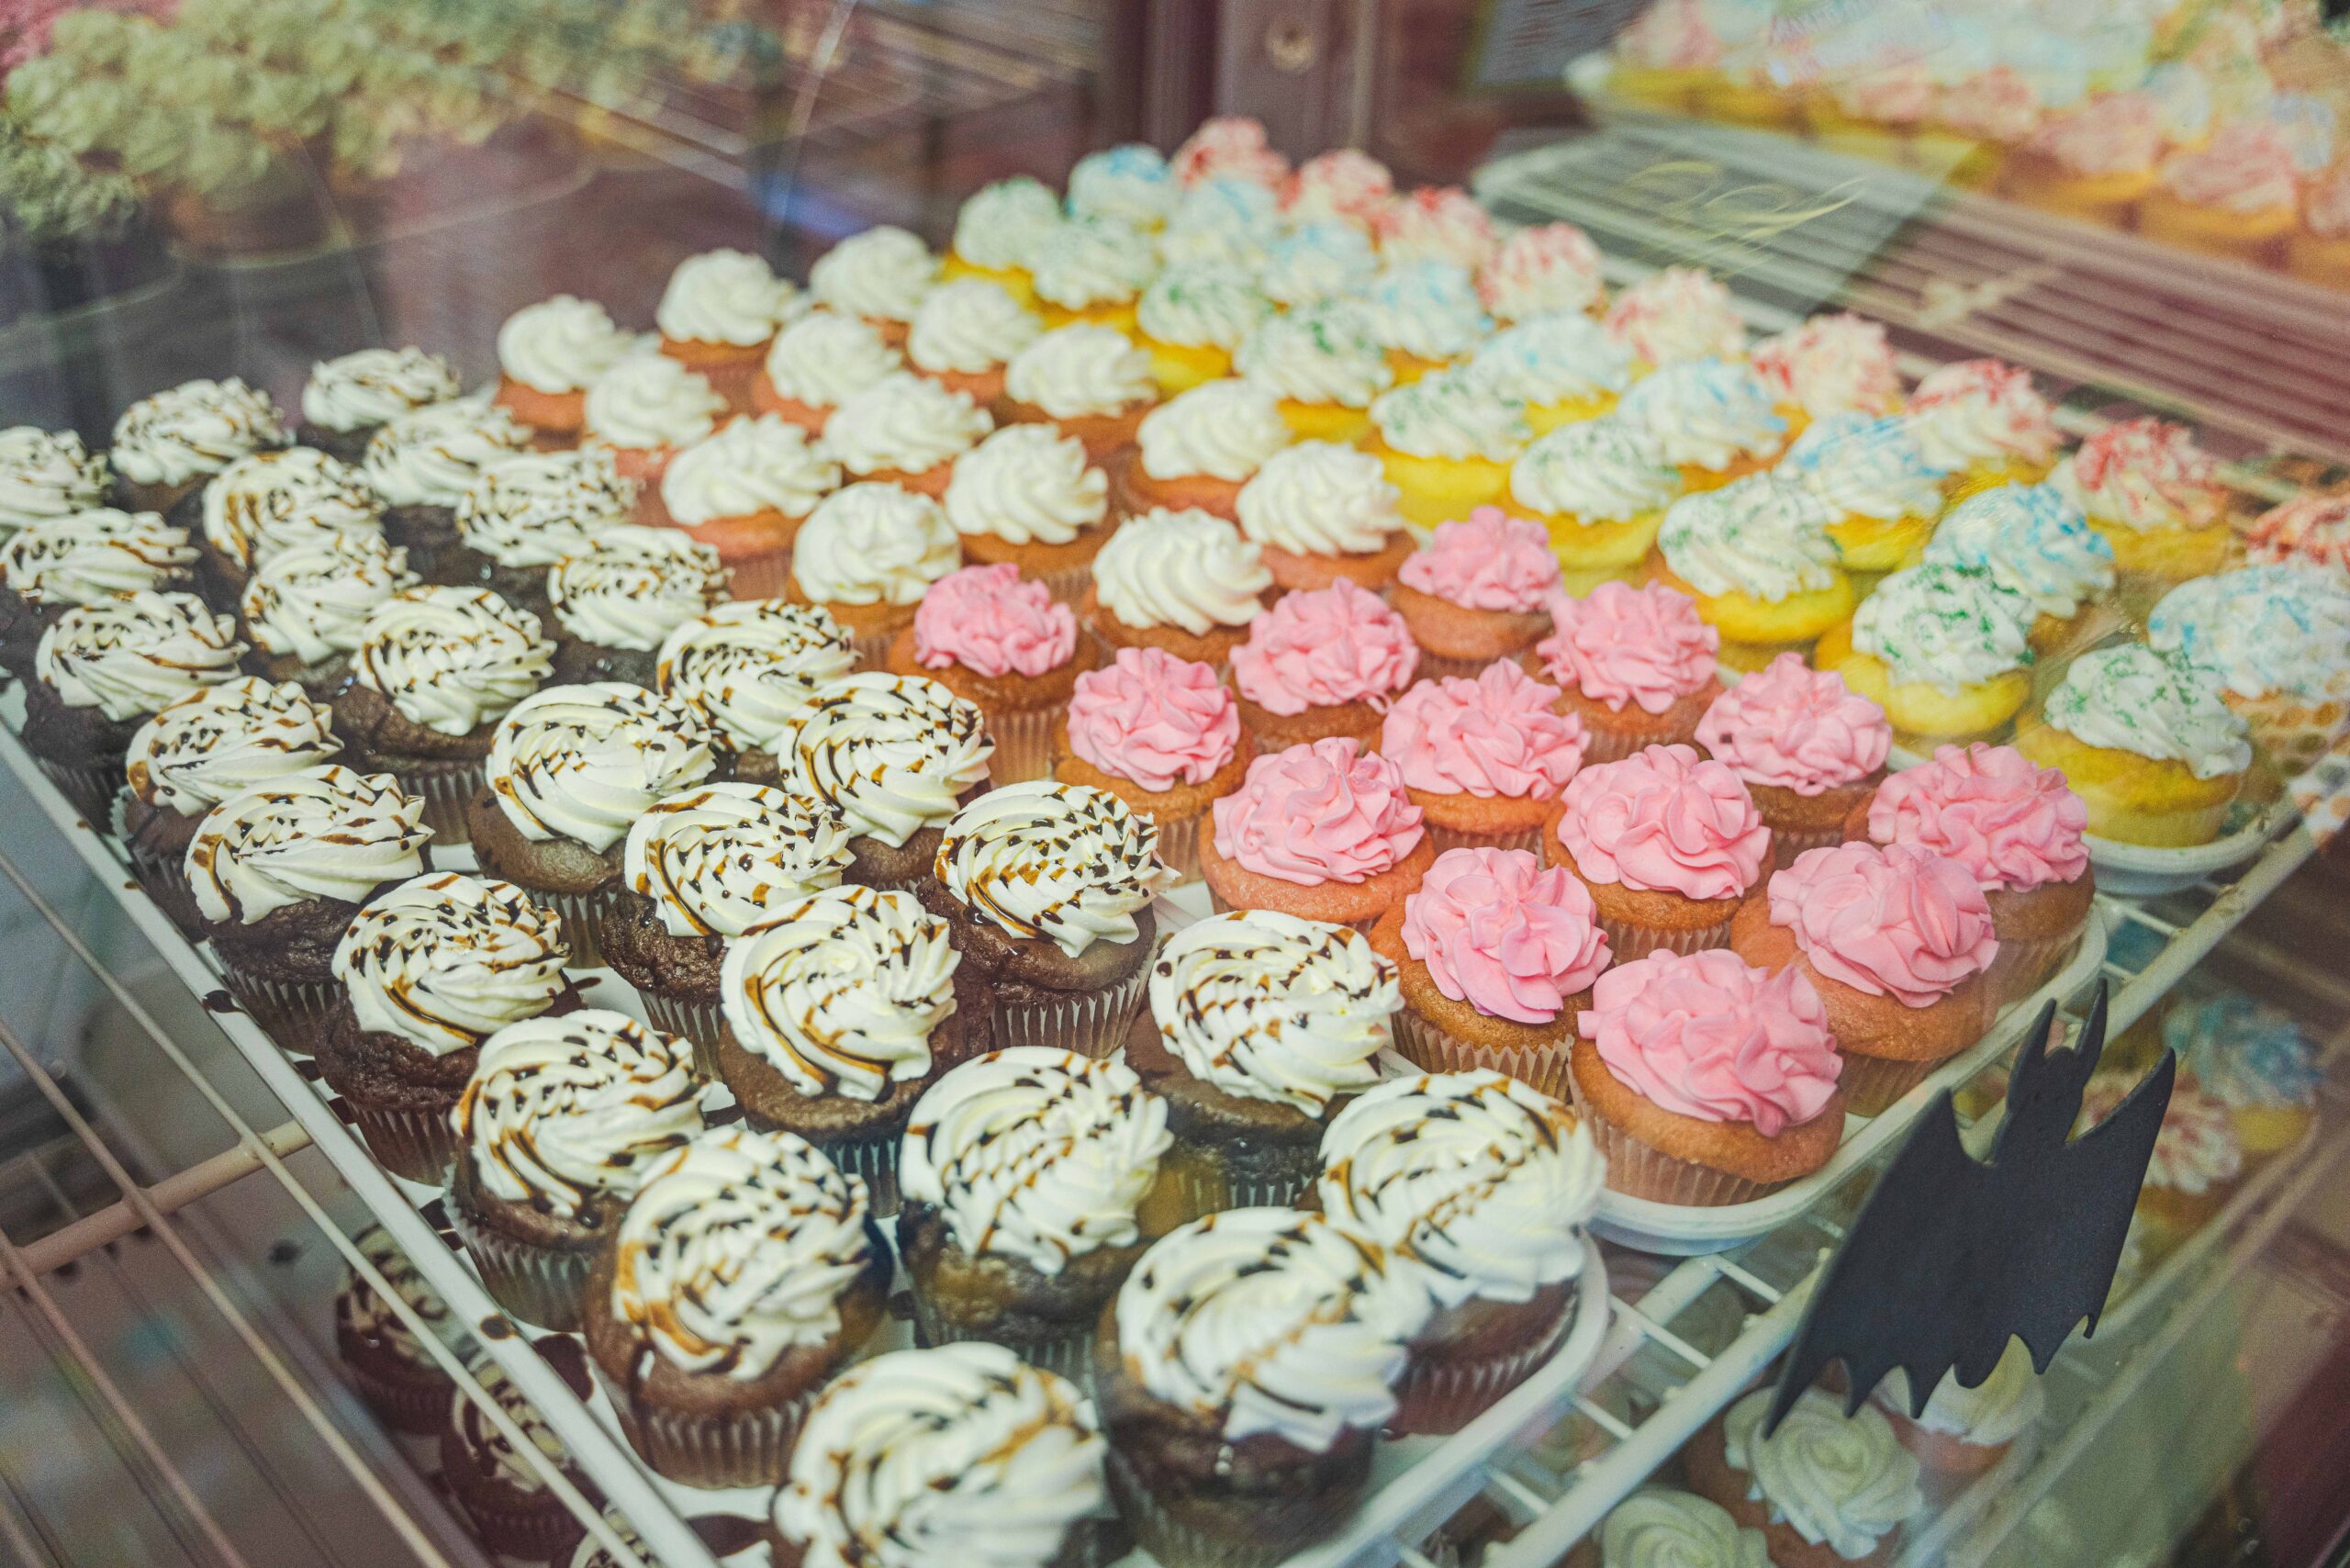 Enjoy a cupcake at Cake Lady Cafe!